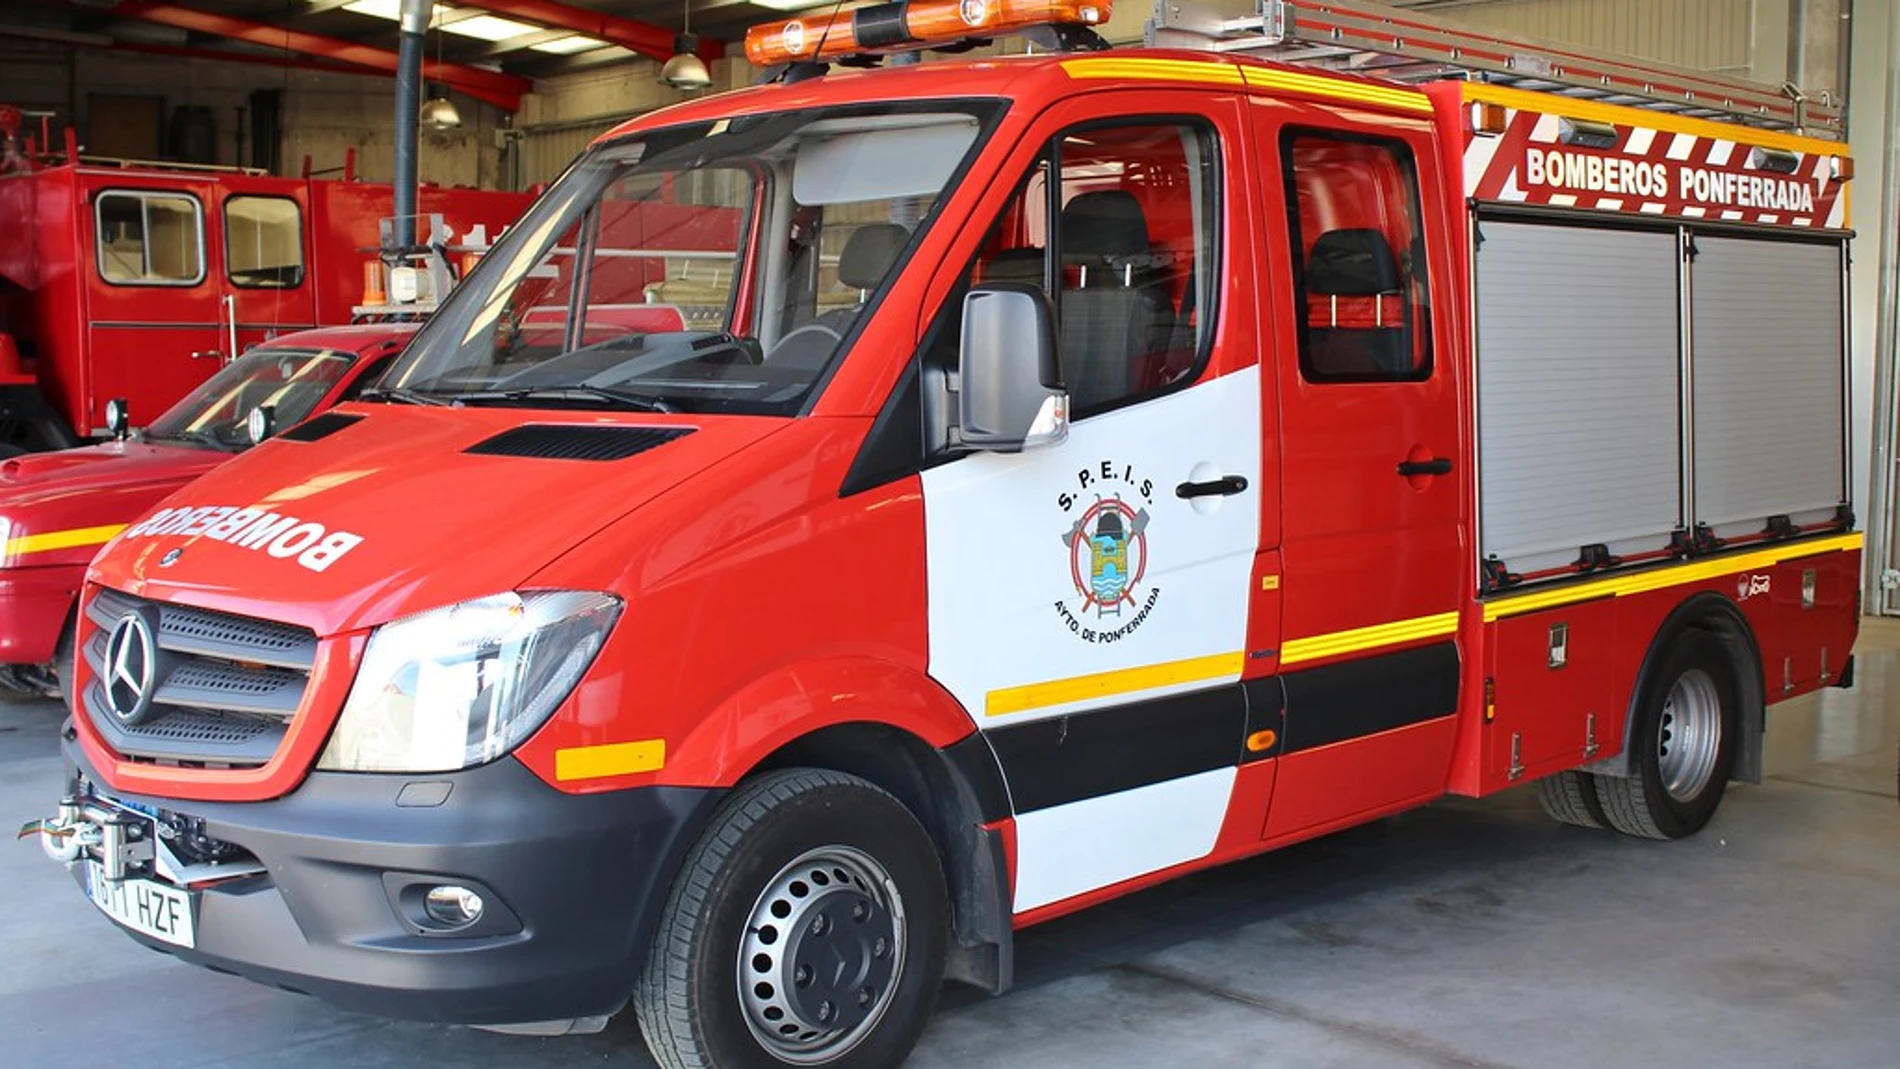 Los bomberos de Ponferrada tuvieron que rescatar a una persona atrapada en la furgoneta